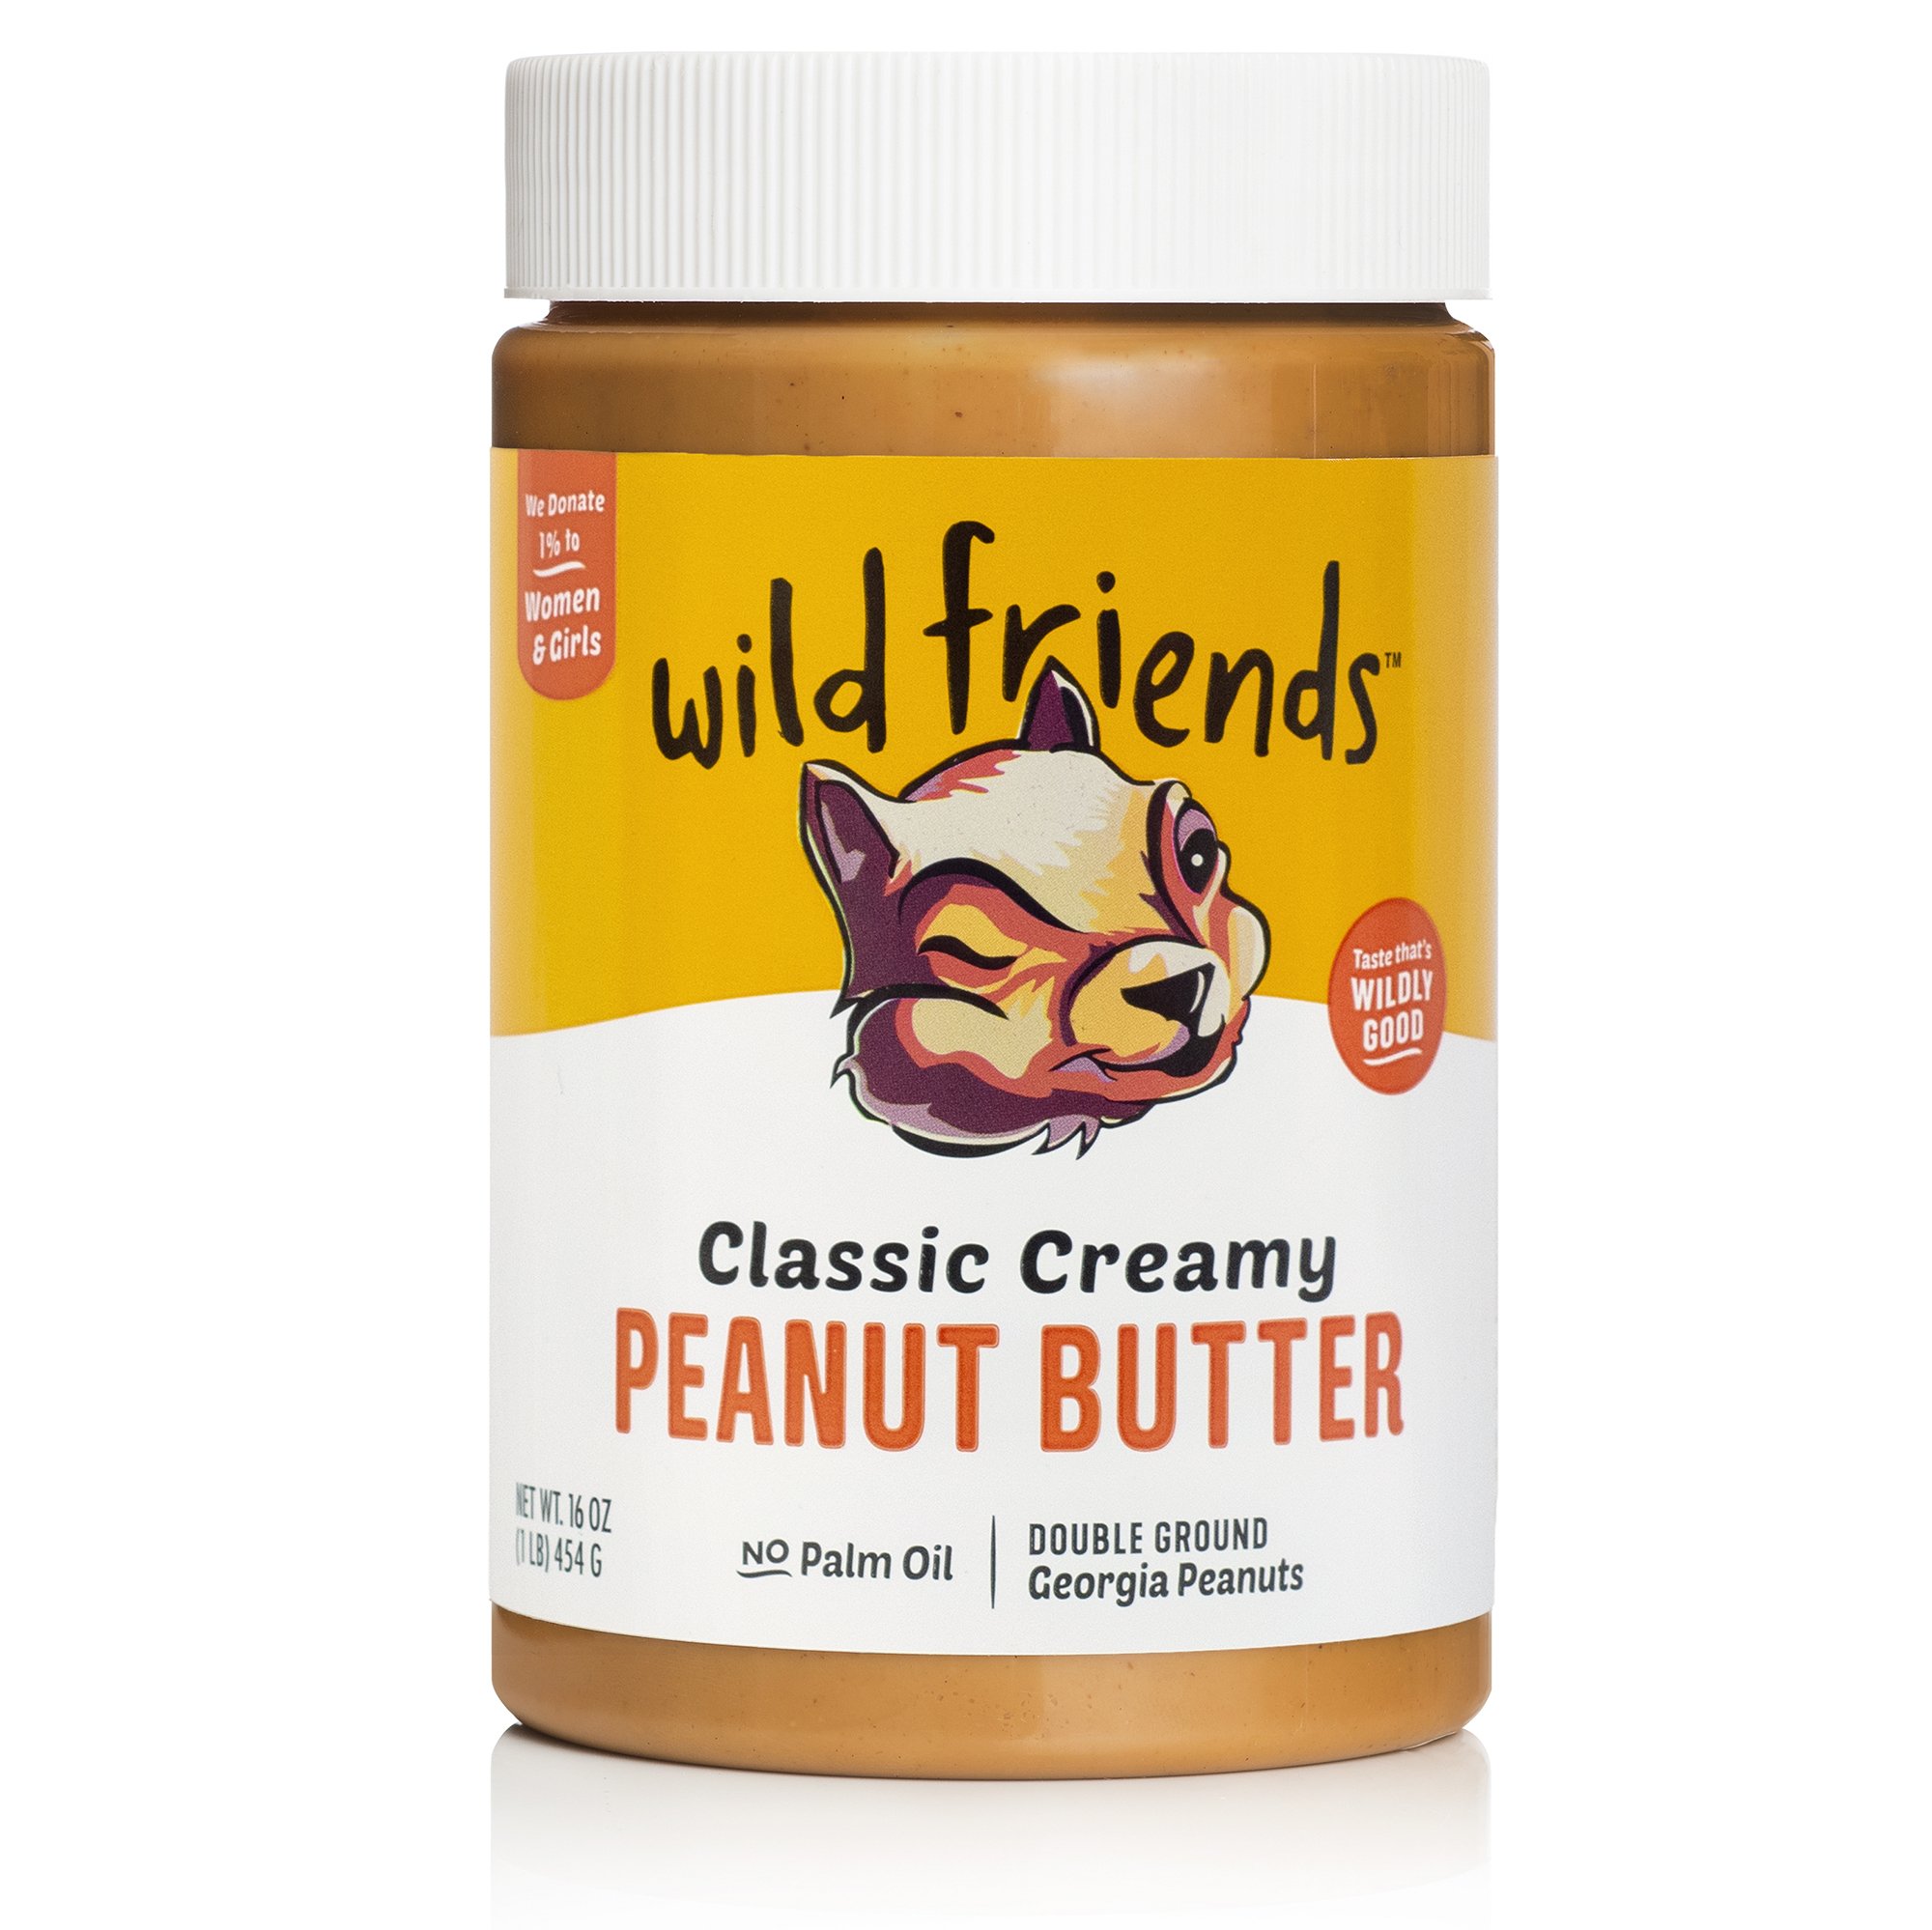 Classic Creamy Peanut Butter - Single Jar